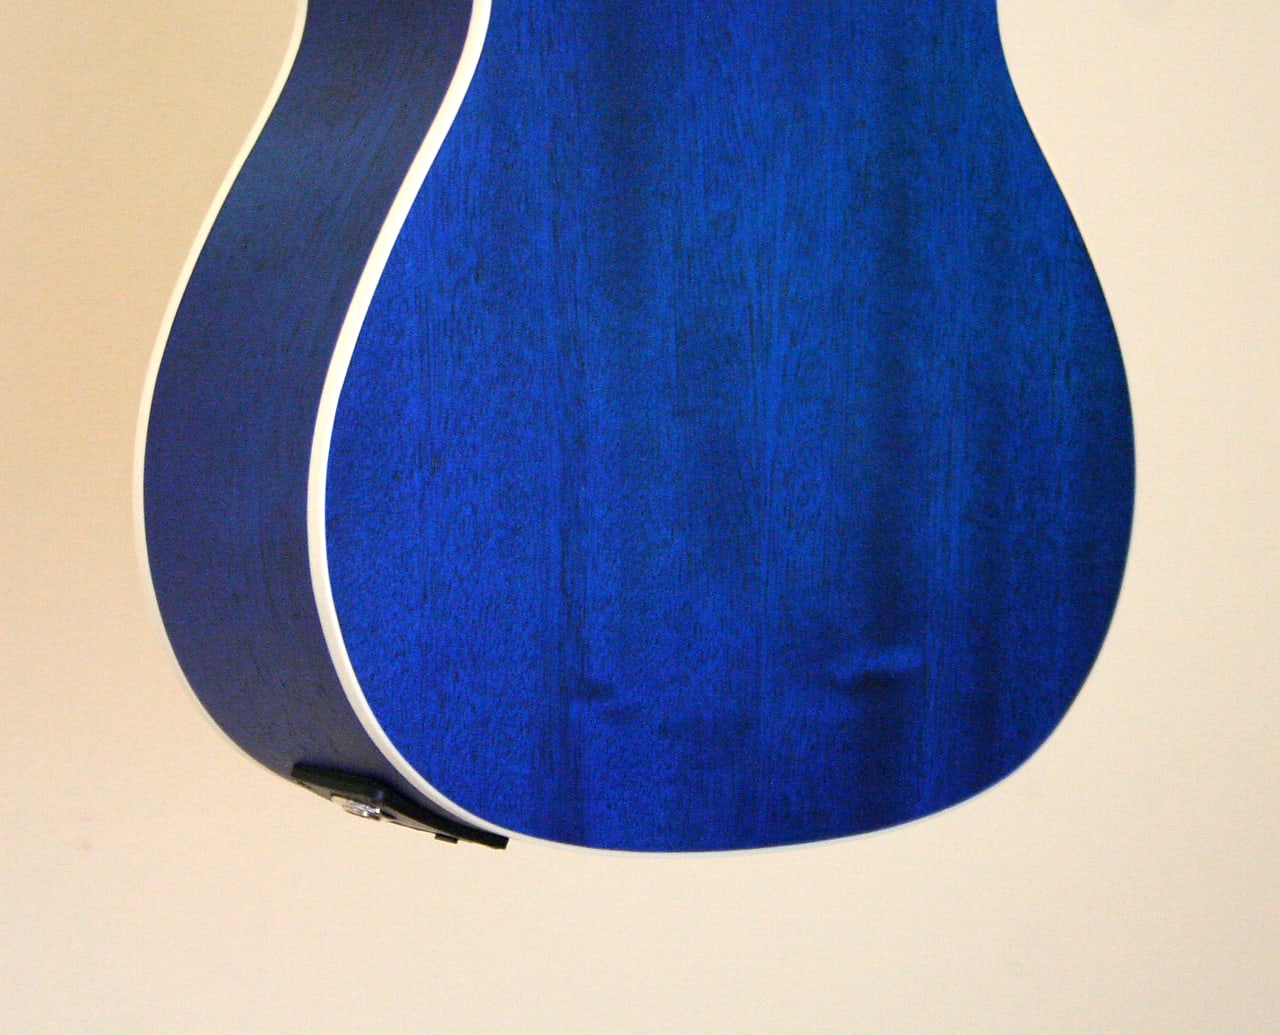 Amahi UK 205EQ, Dark Blue Mahogany Ukulele - Concert Size with Gig Bag